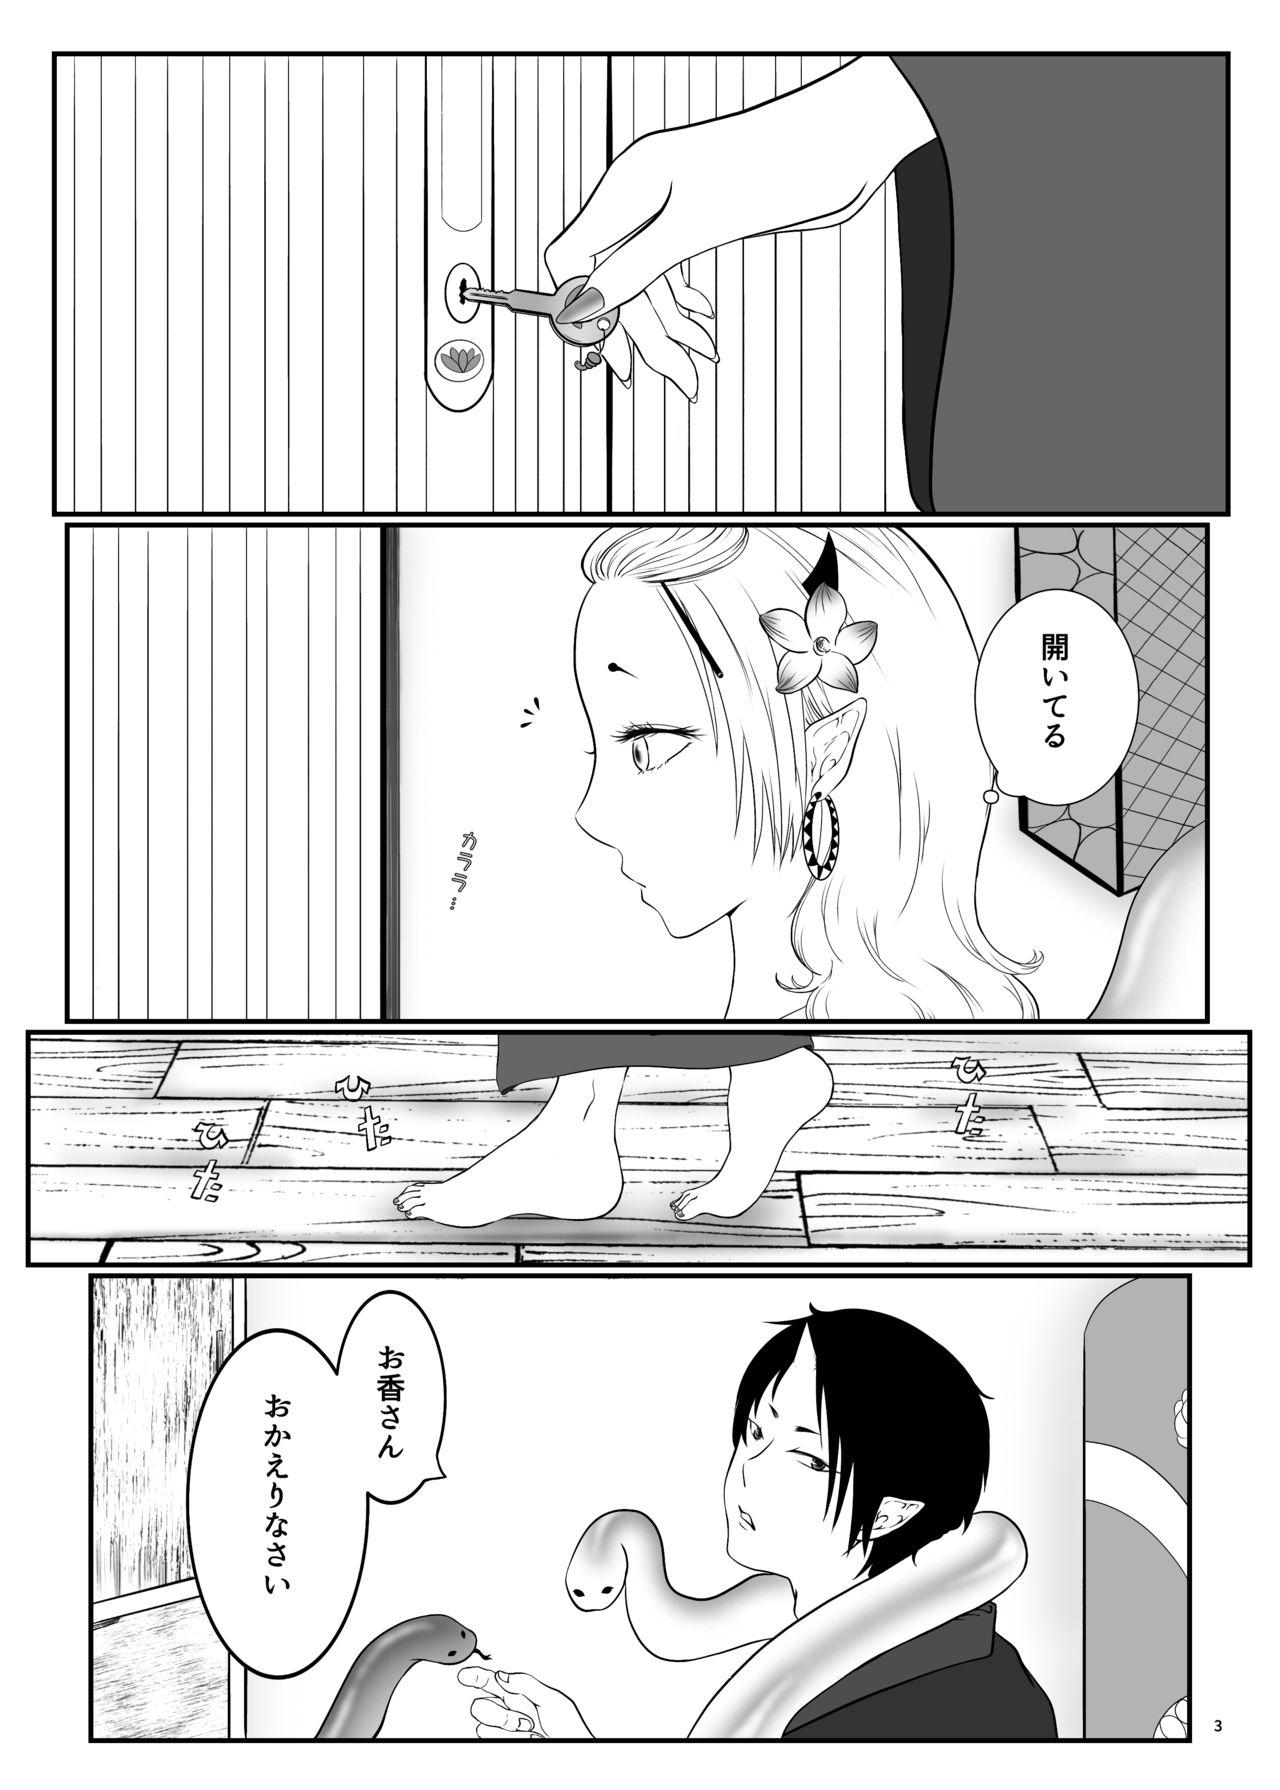 Fucking Girls Touni Anata no Mono - Hoozuki no reitetsu Ruiva - Page 2